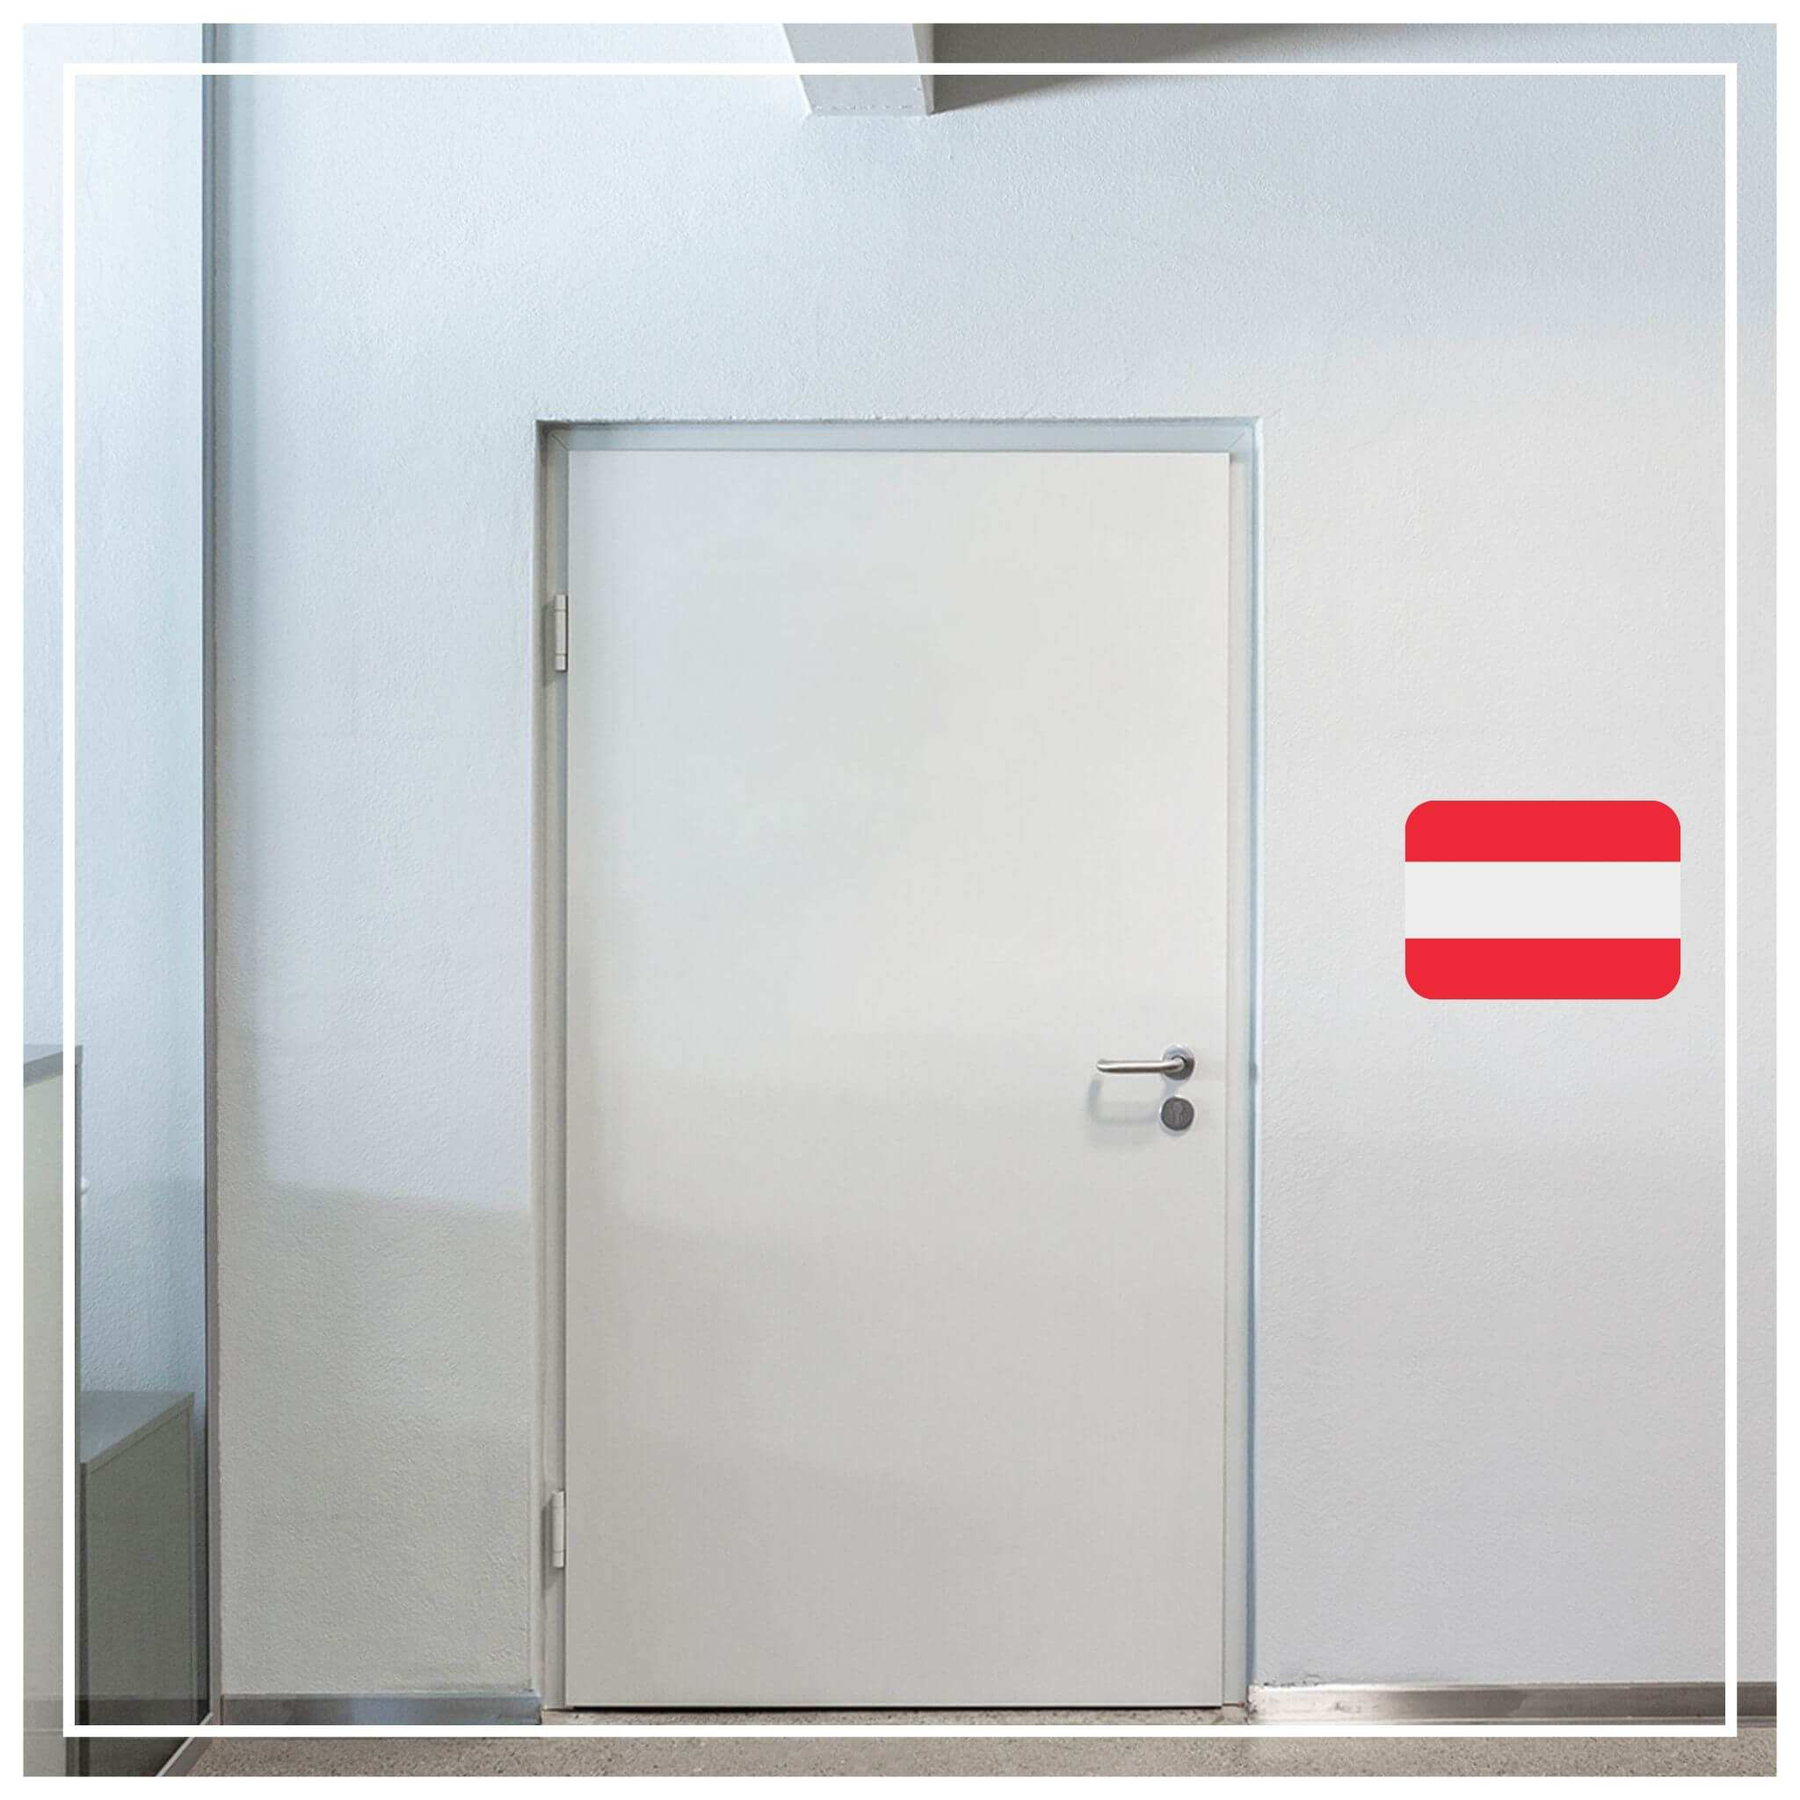 Türsicherung - Wie sichere ich meine Türen am Besten?, Blog